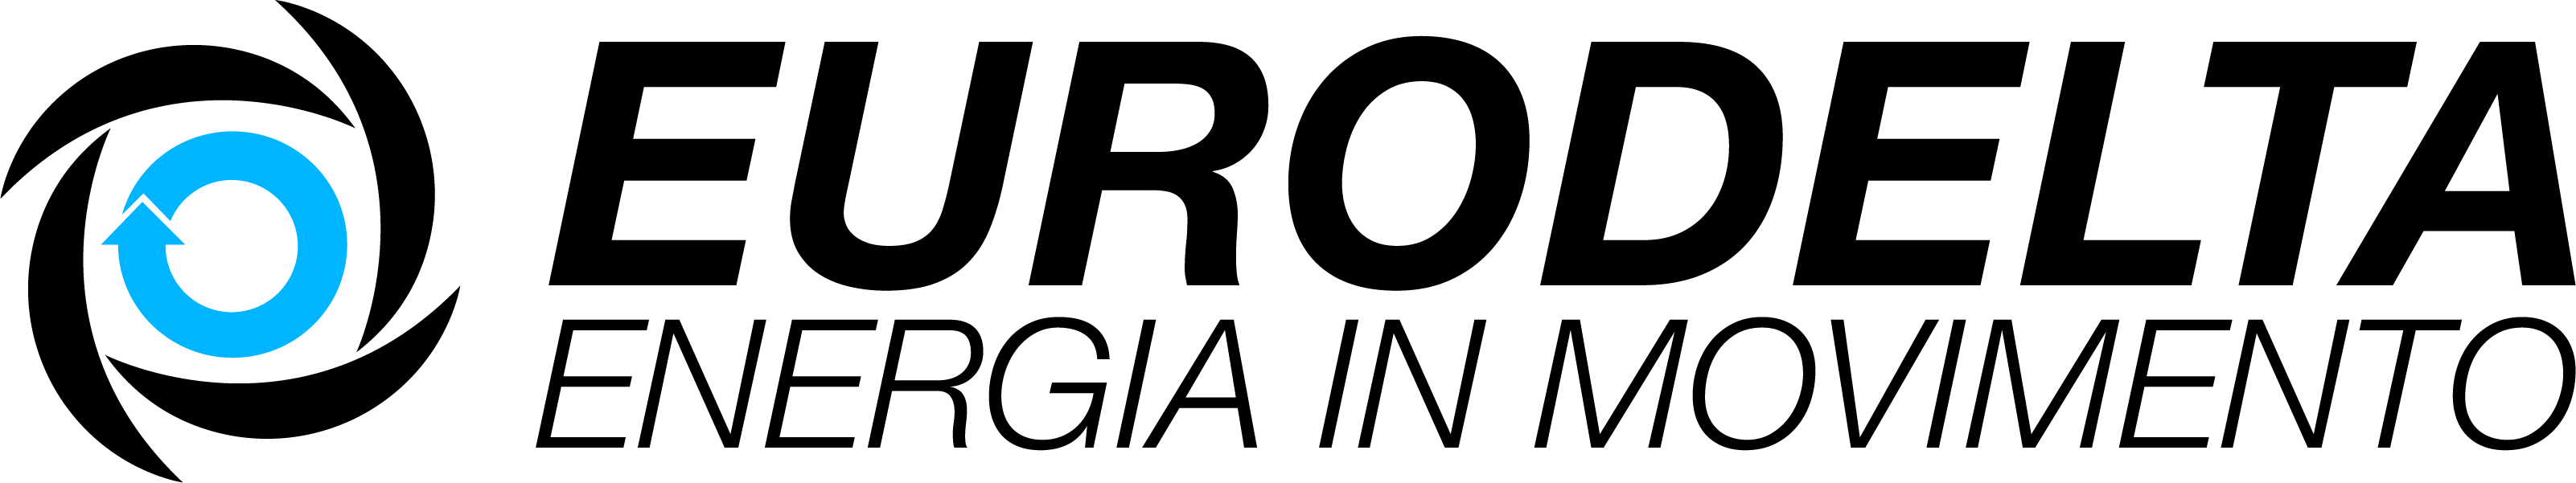 Eurodelta-logo-gruppo-elettrogeno